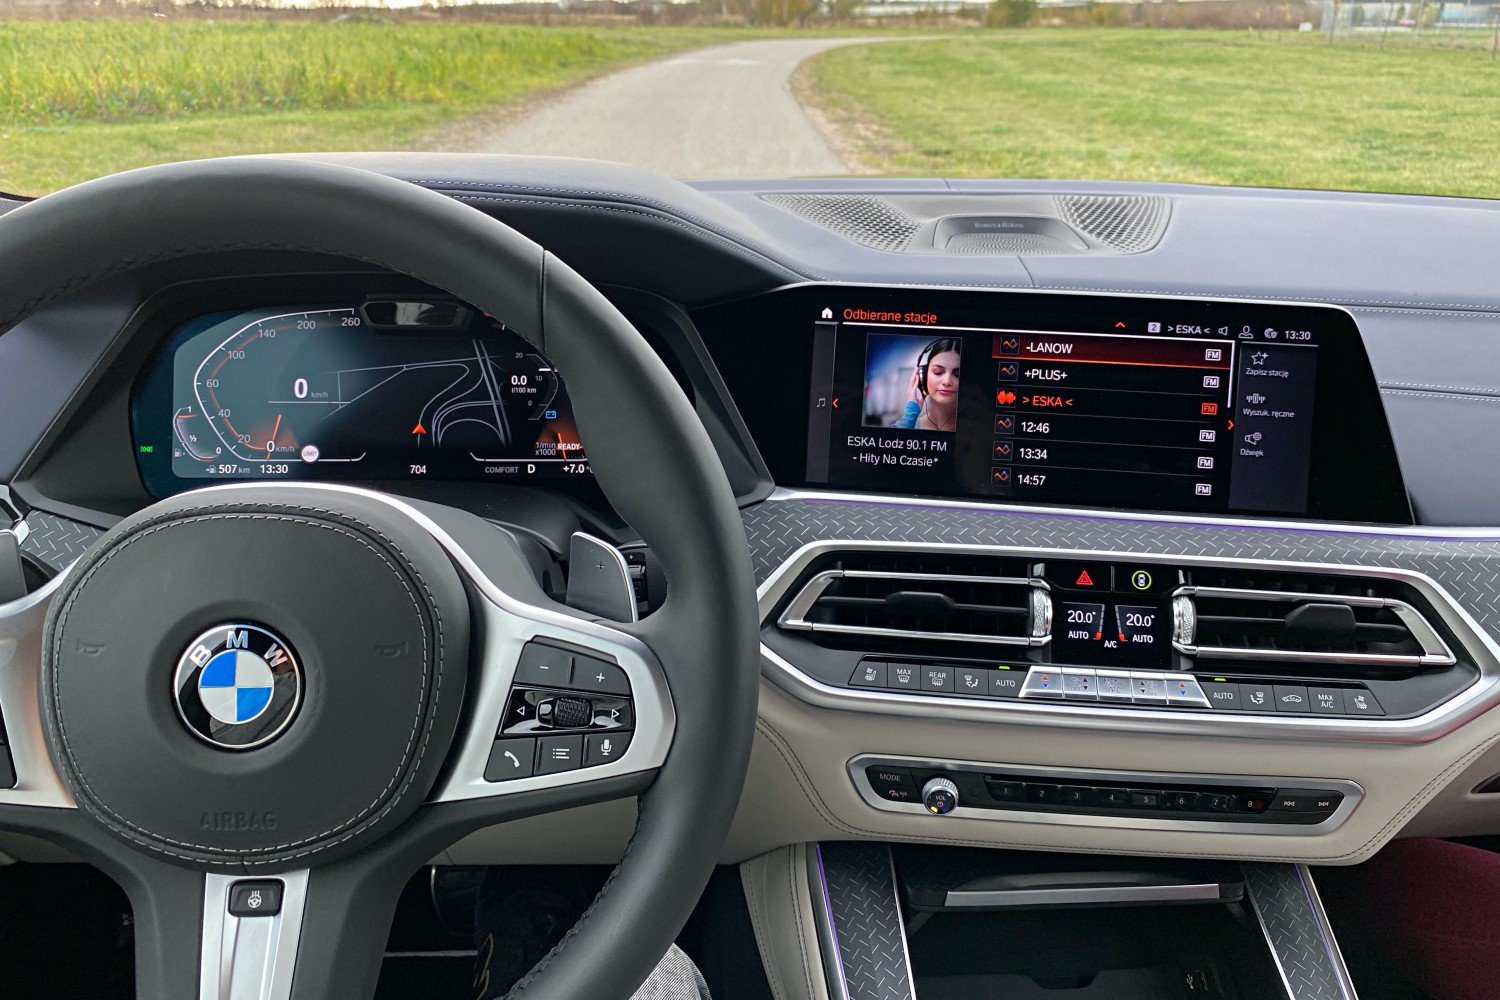 Das größte Update des BMW iDrive seit Jahren – neue Funktionen gehen an über eine Million Bayern 281